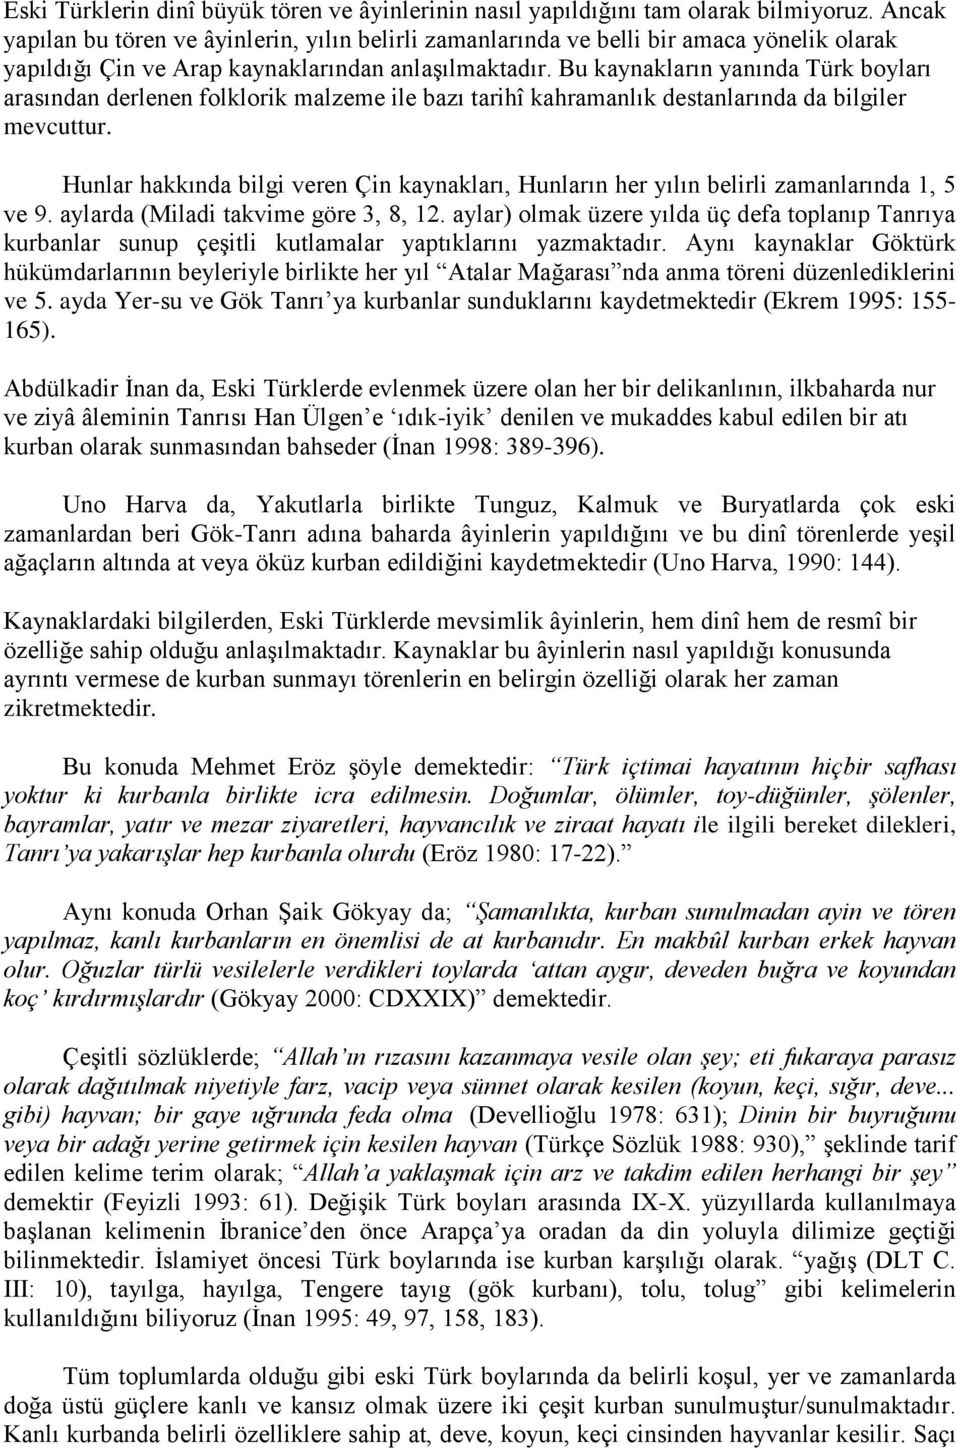 Bu kaynakların yanında Türk boyları arasından derlenen folklorik malzeme ile bazı tarihî kahramanlık destanlarında da bilgiler mevcuttur.